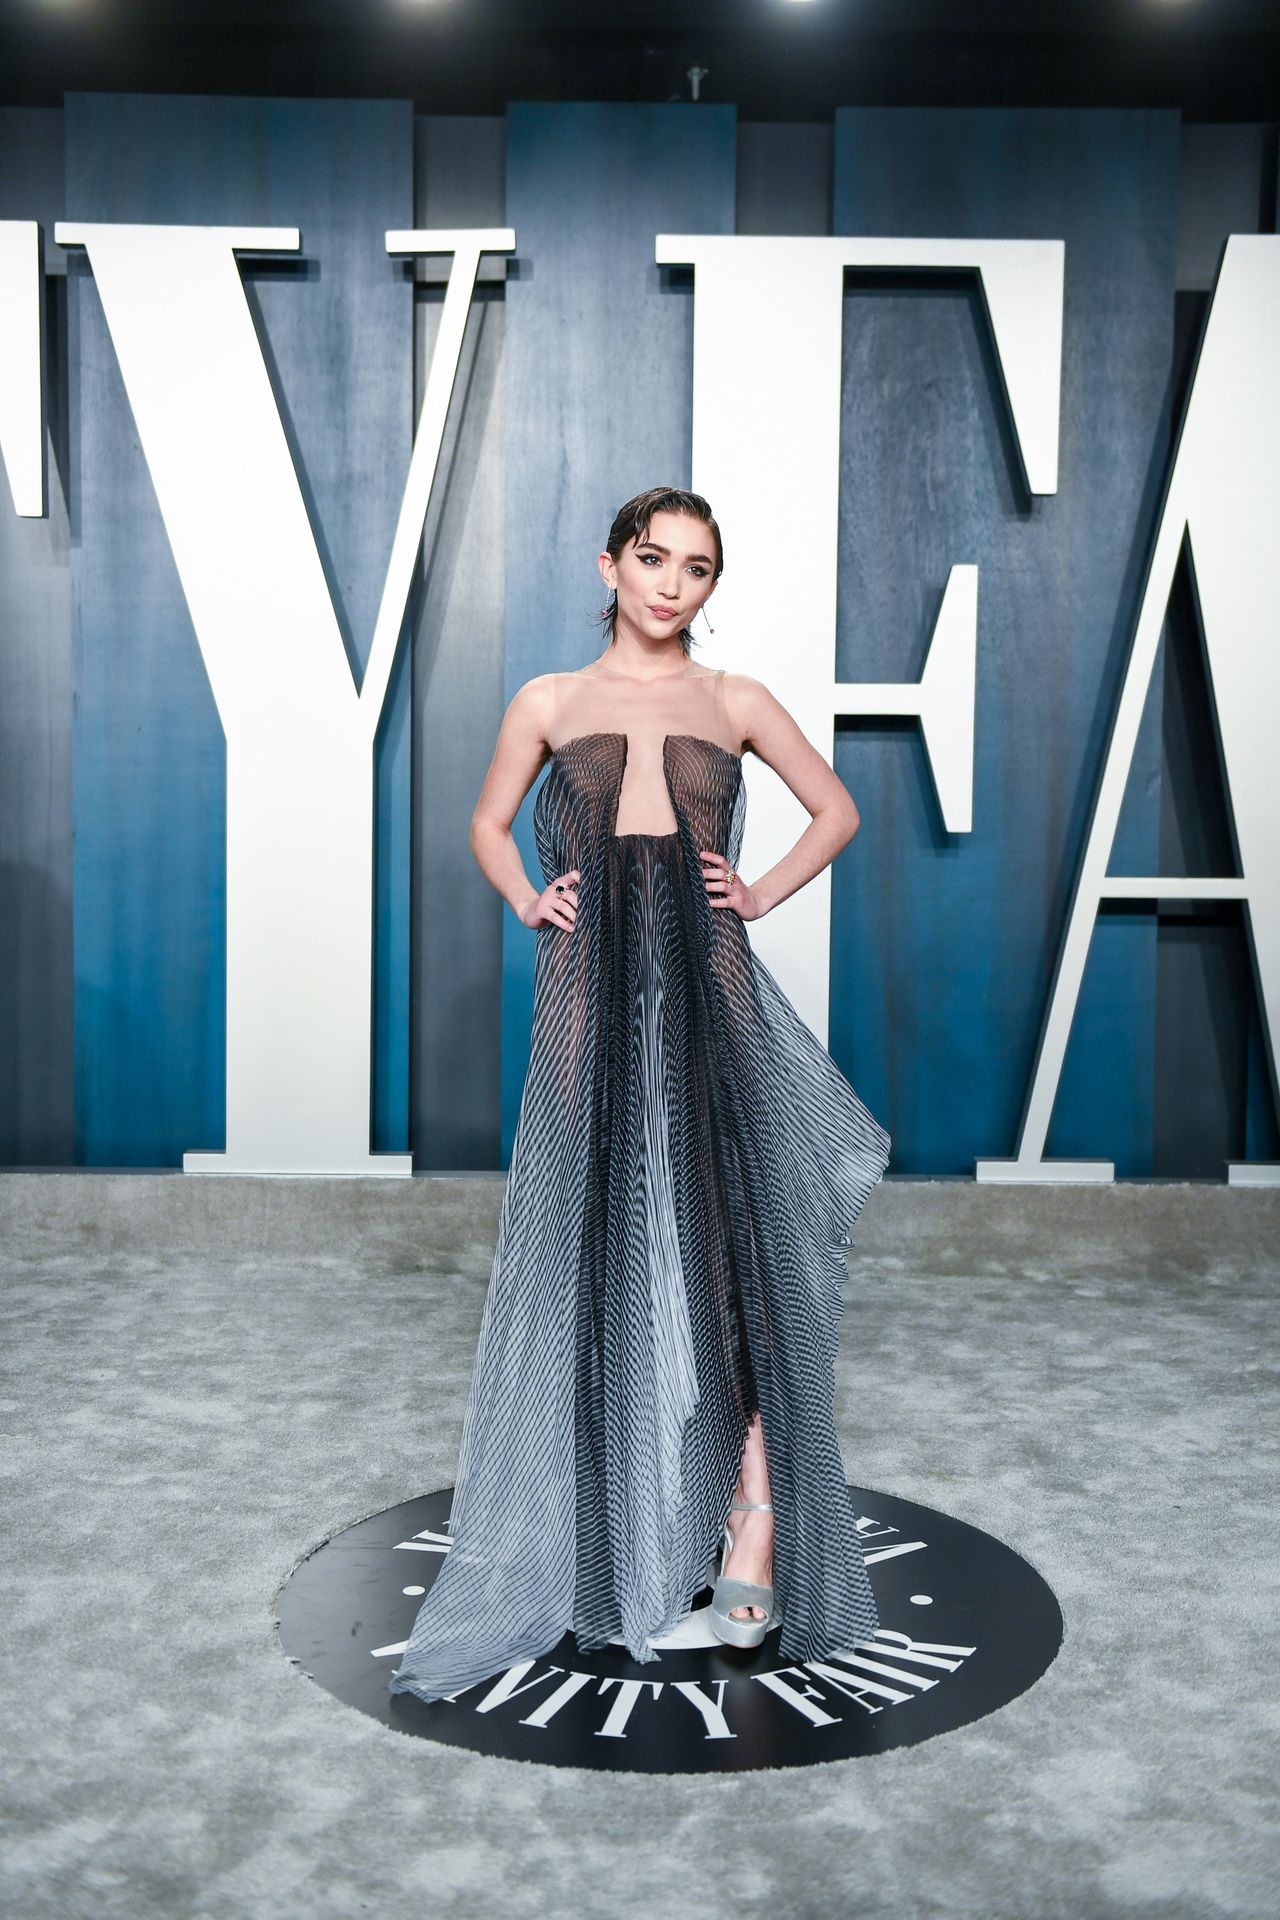 Rowan Blancha
rd Flaunts Her Young Figure at the Vanity Fair Oscar Party (29 Photos)